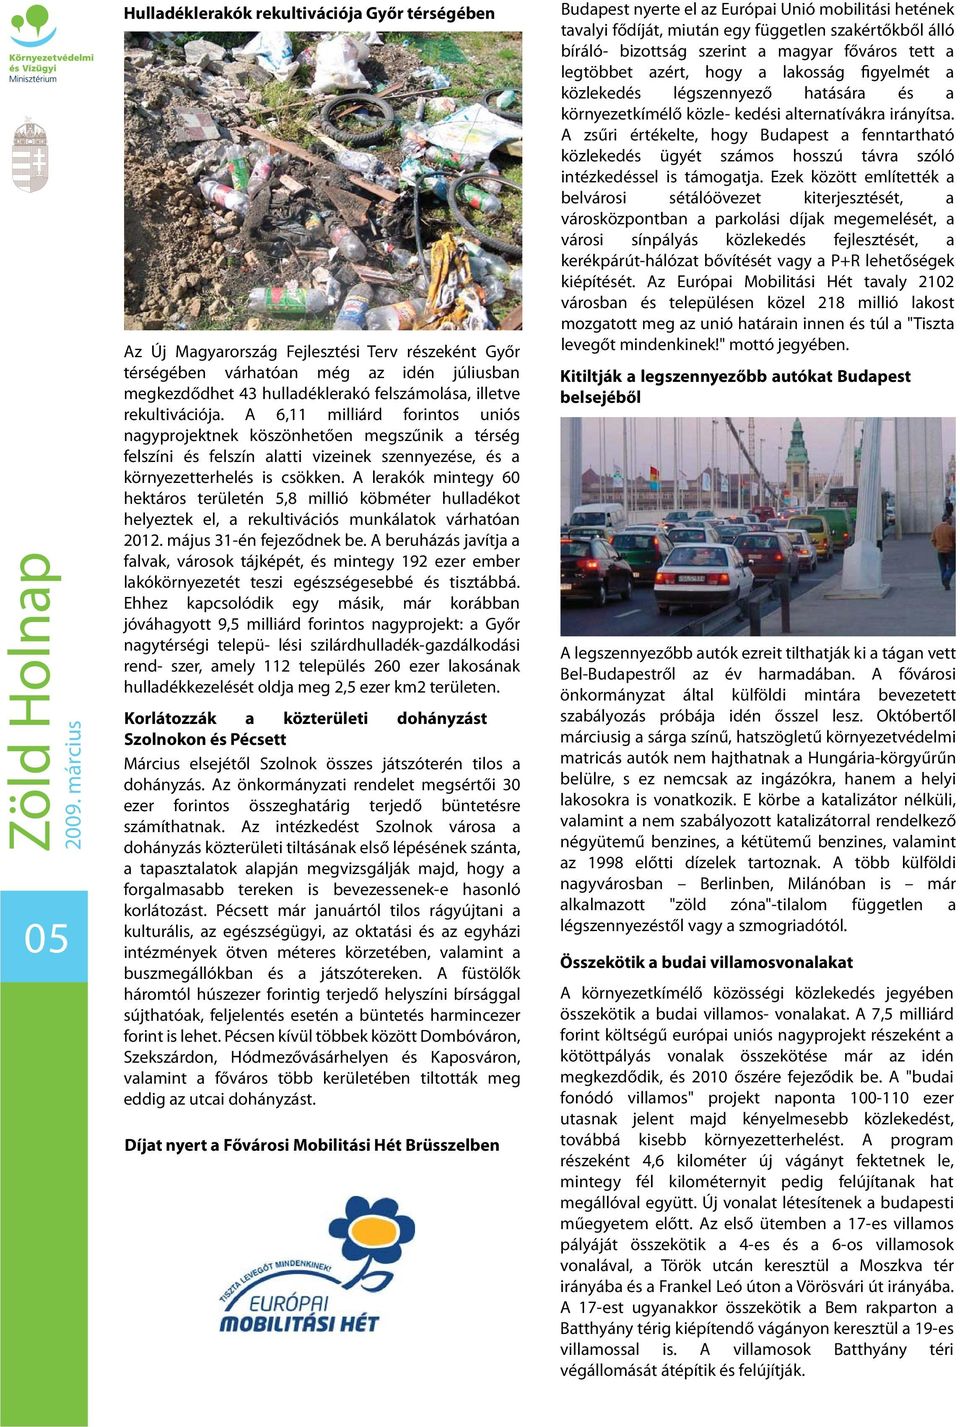 A lerakók mintegy 60 hektáros területén 5,8 millió köbméter hulladékot helyeztek el, a rekultivációs munkálatok várhatóan 2012. május 31-én fejeződnek be.